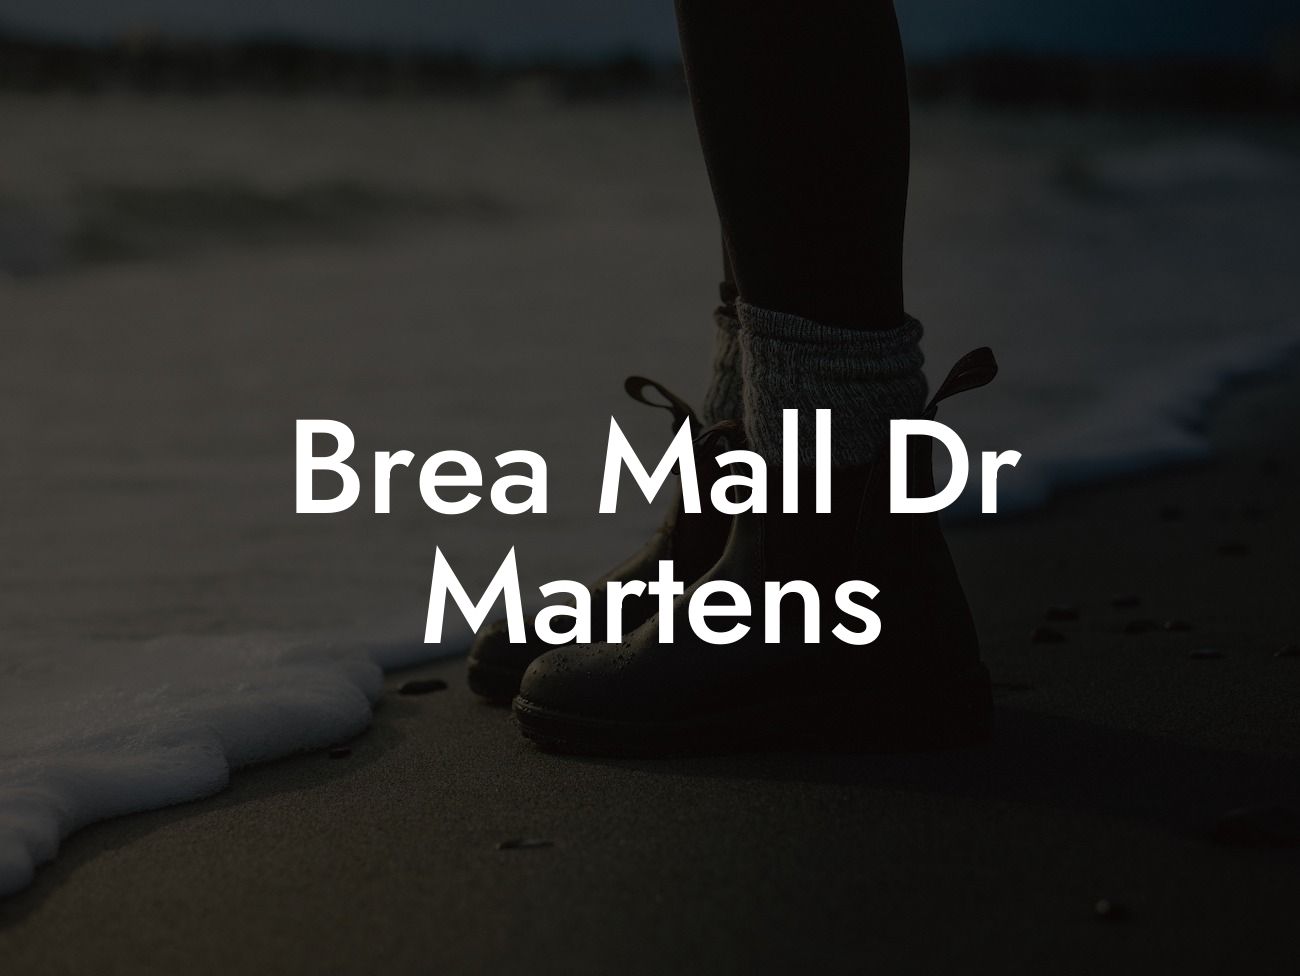 Brea Mall Dr Martens